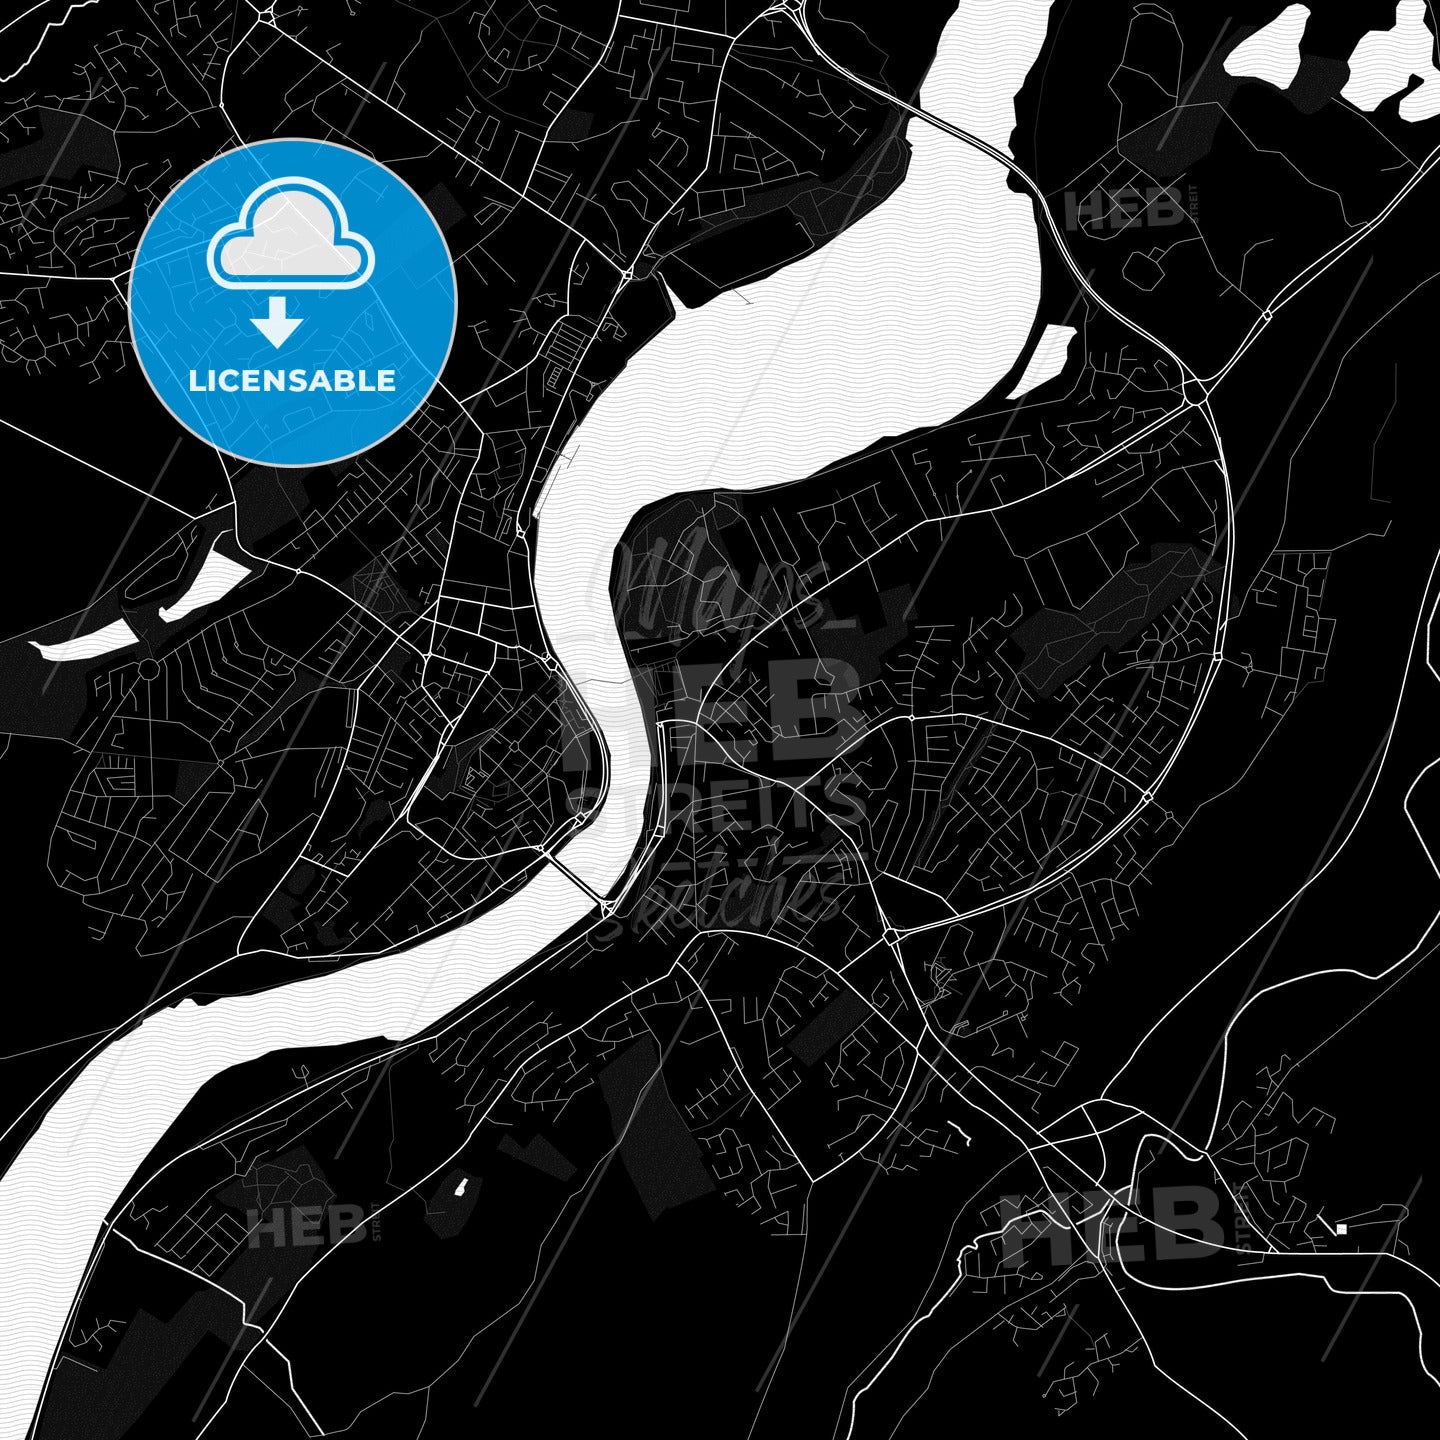 Derry, Northern Ireland PDF map